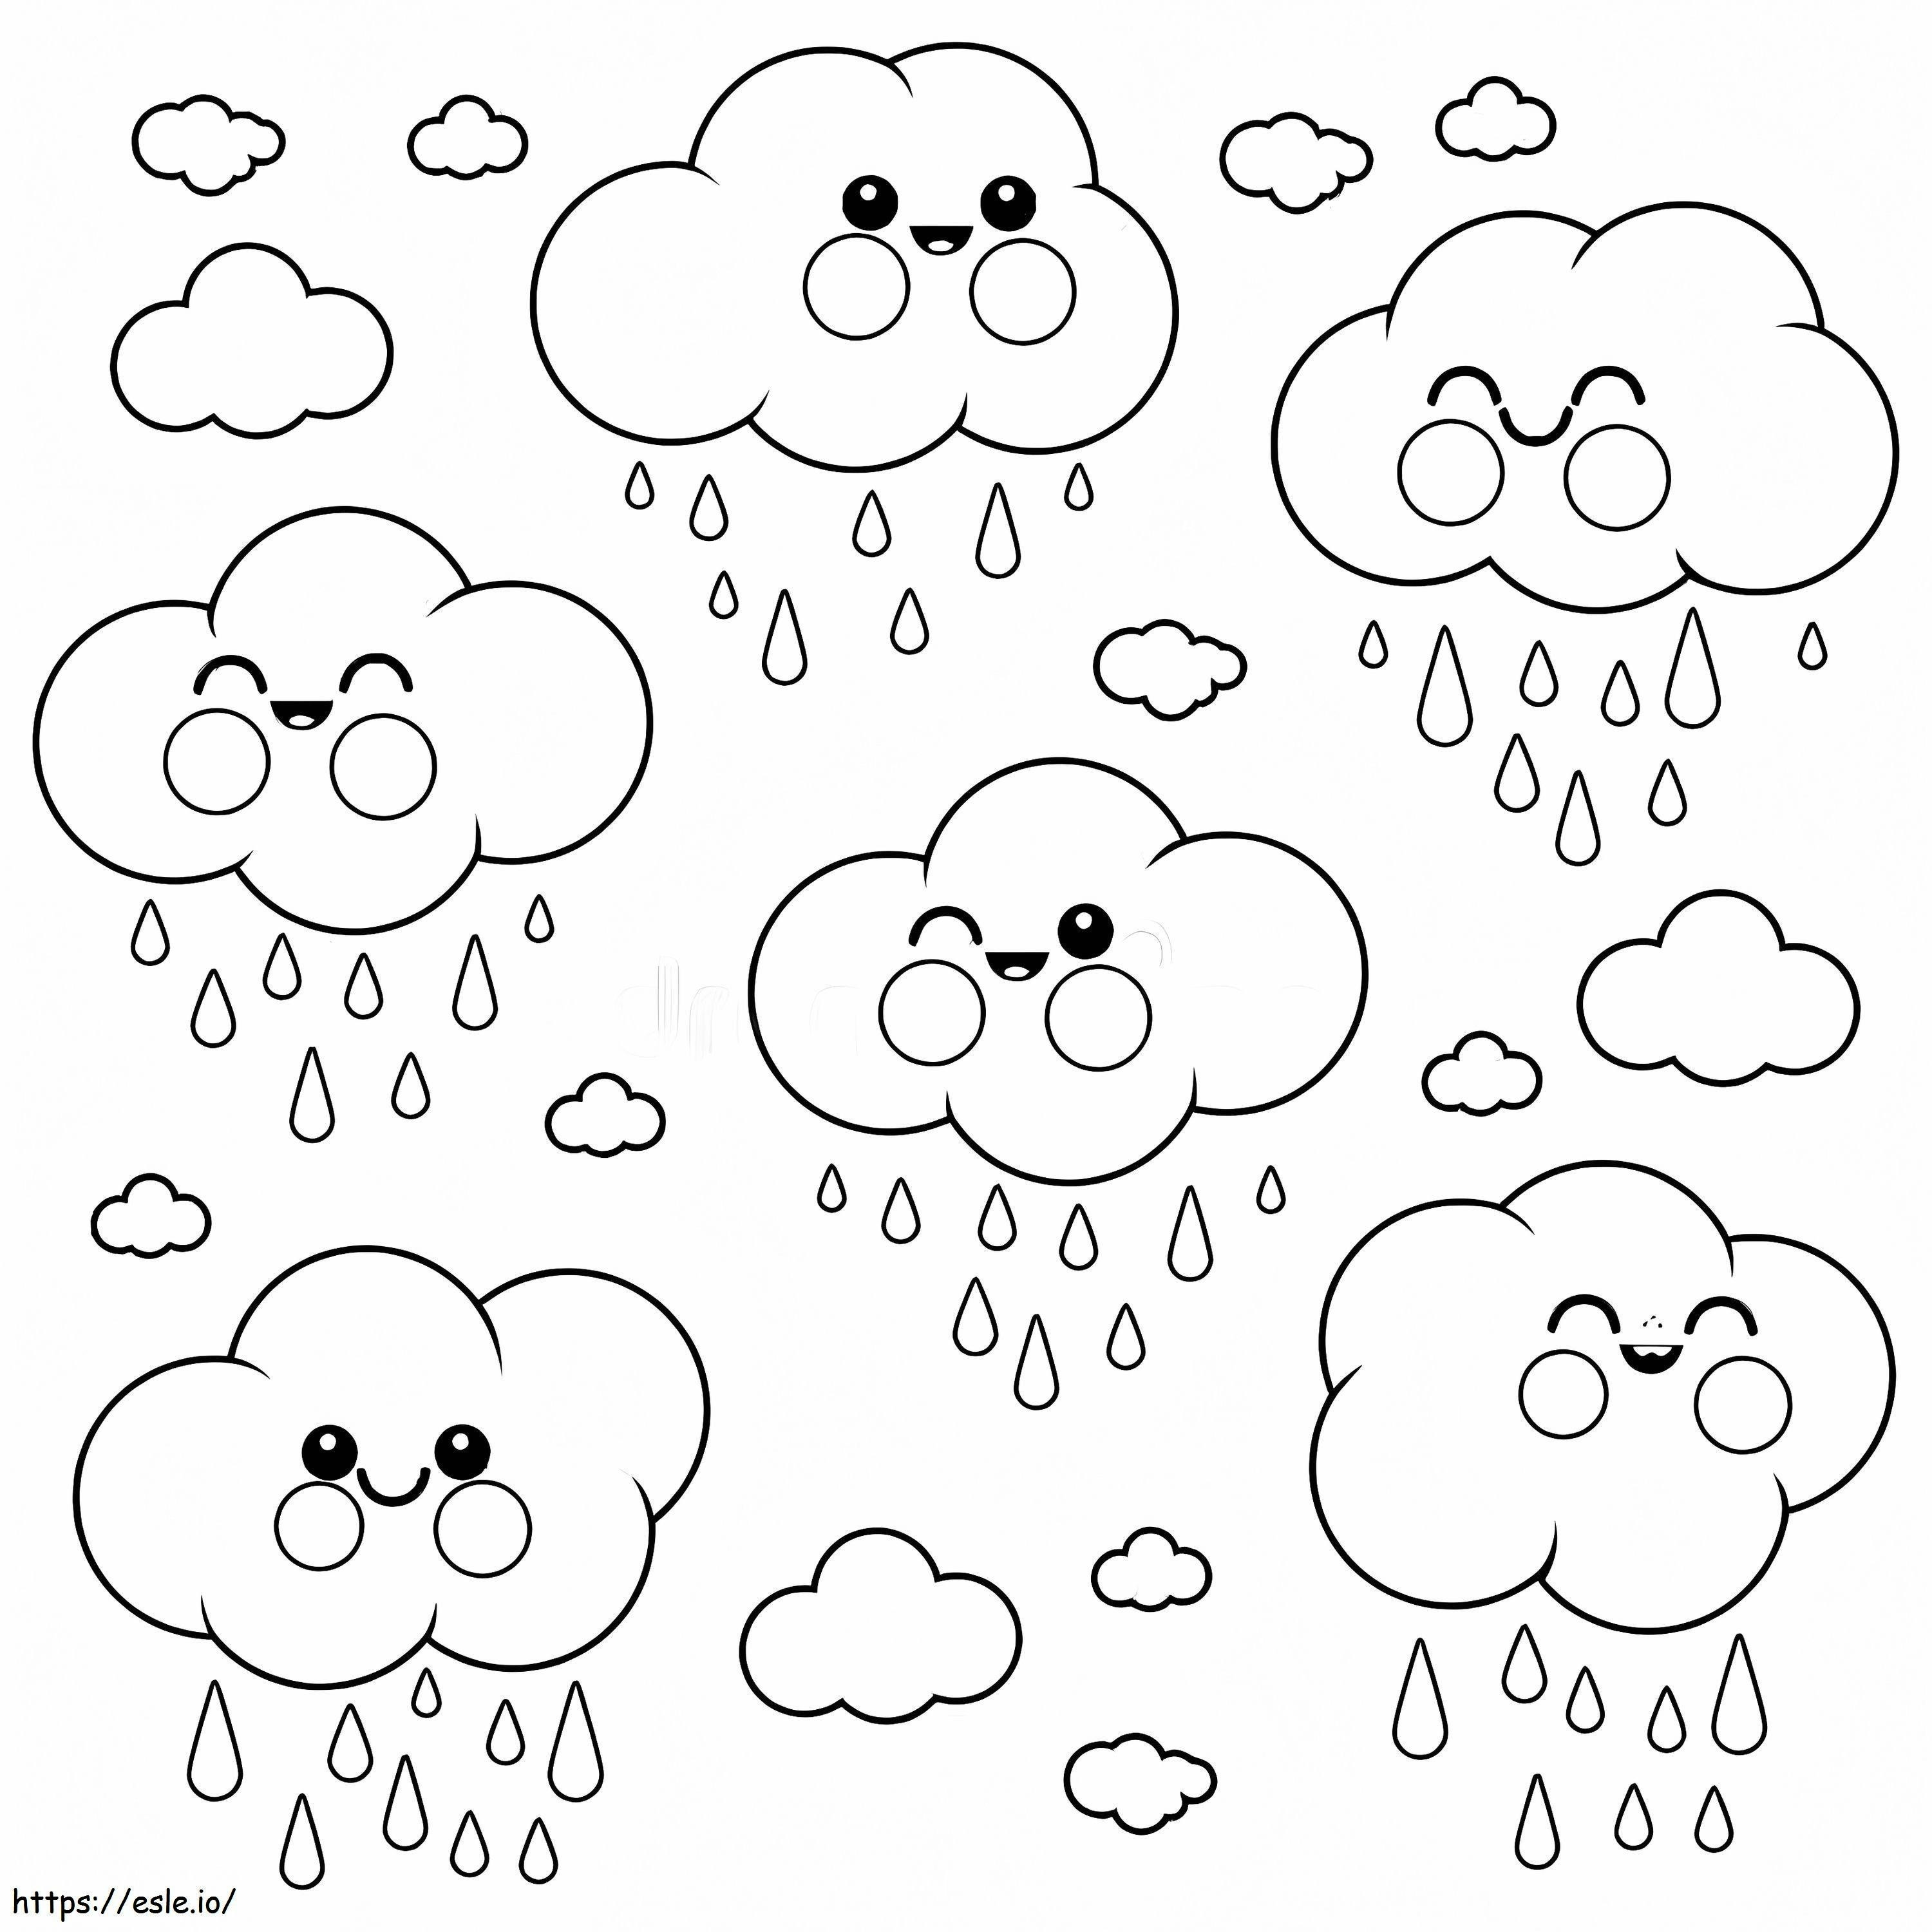 Happy Rain coloring page